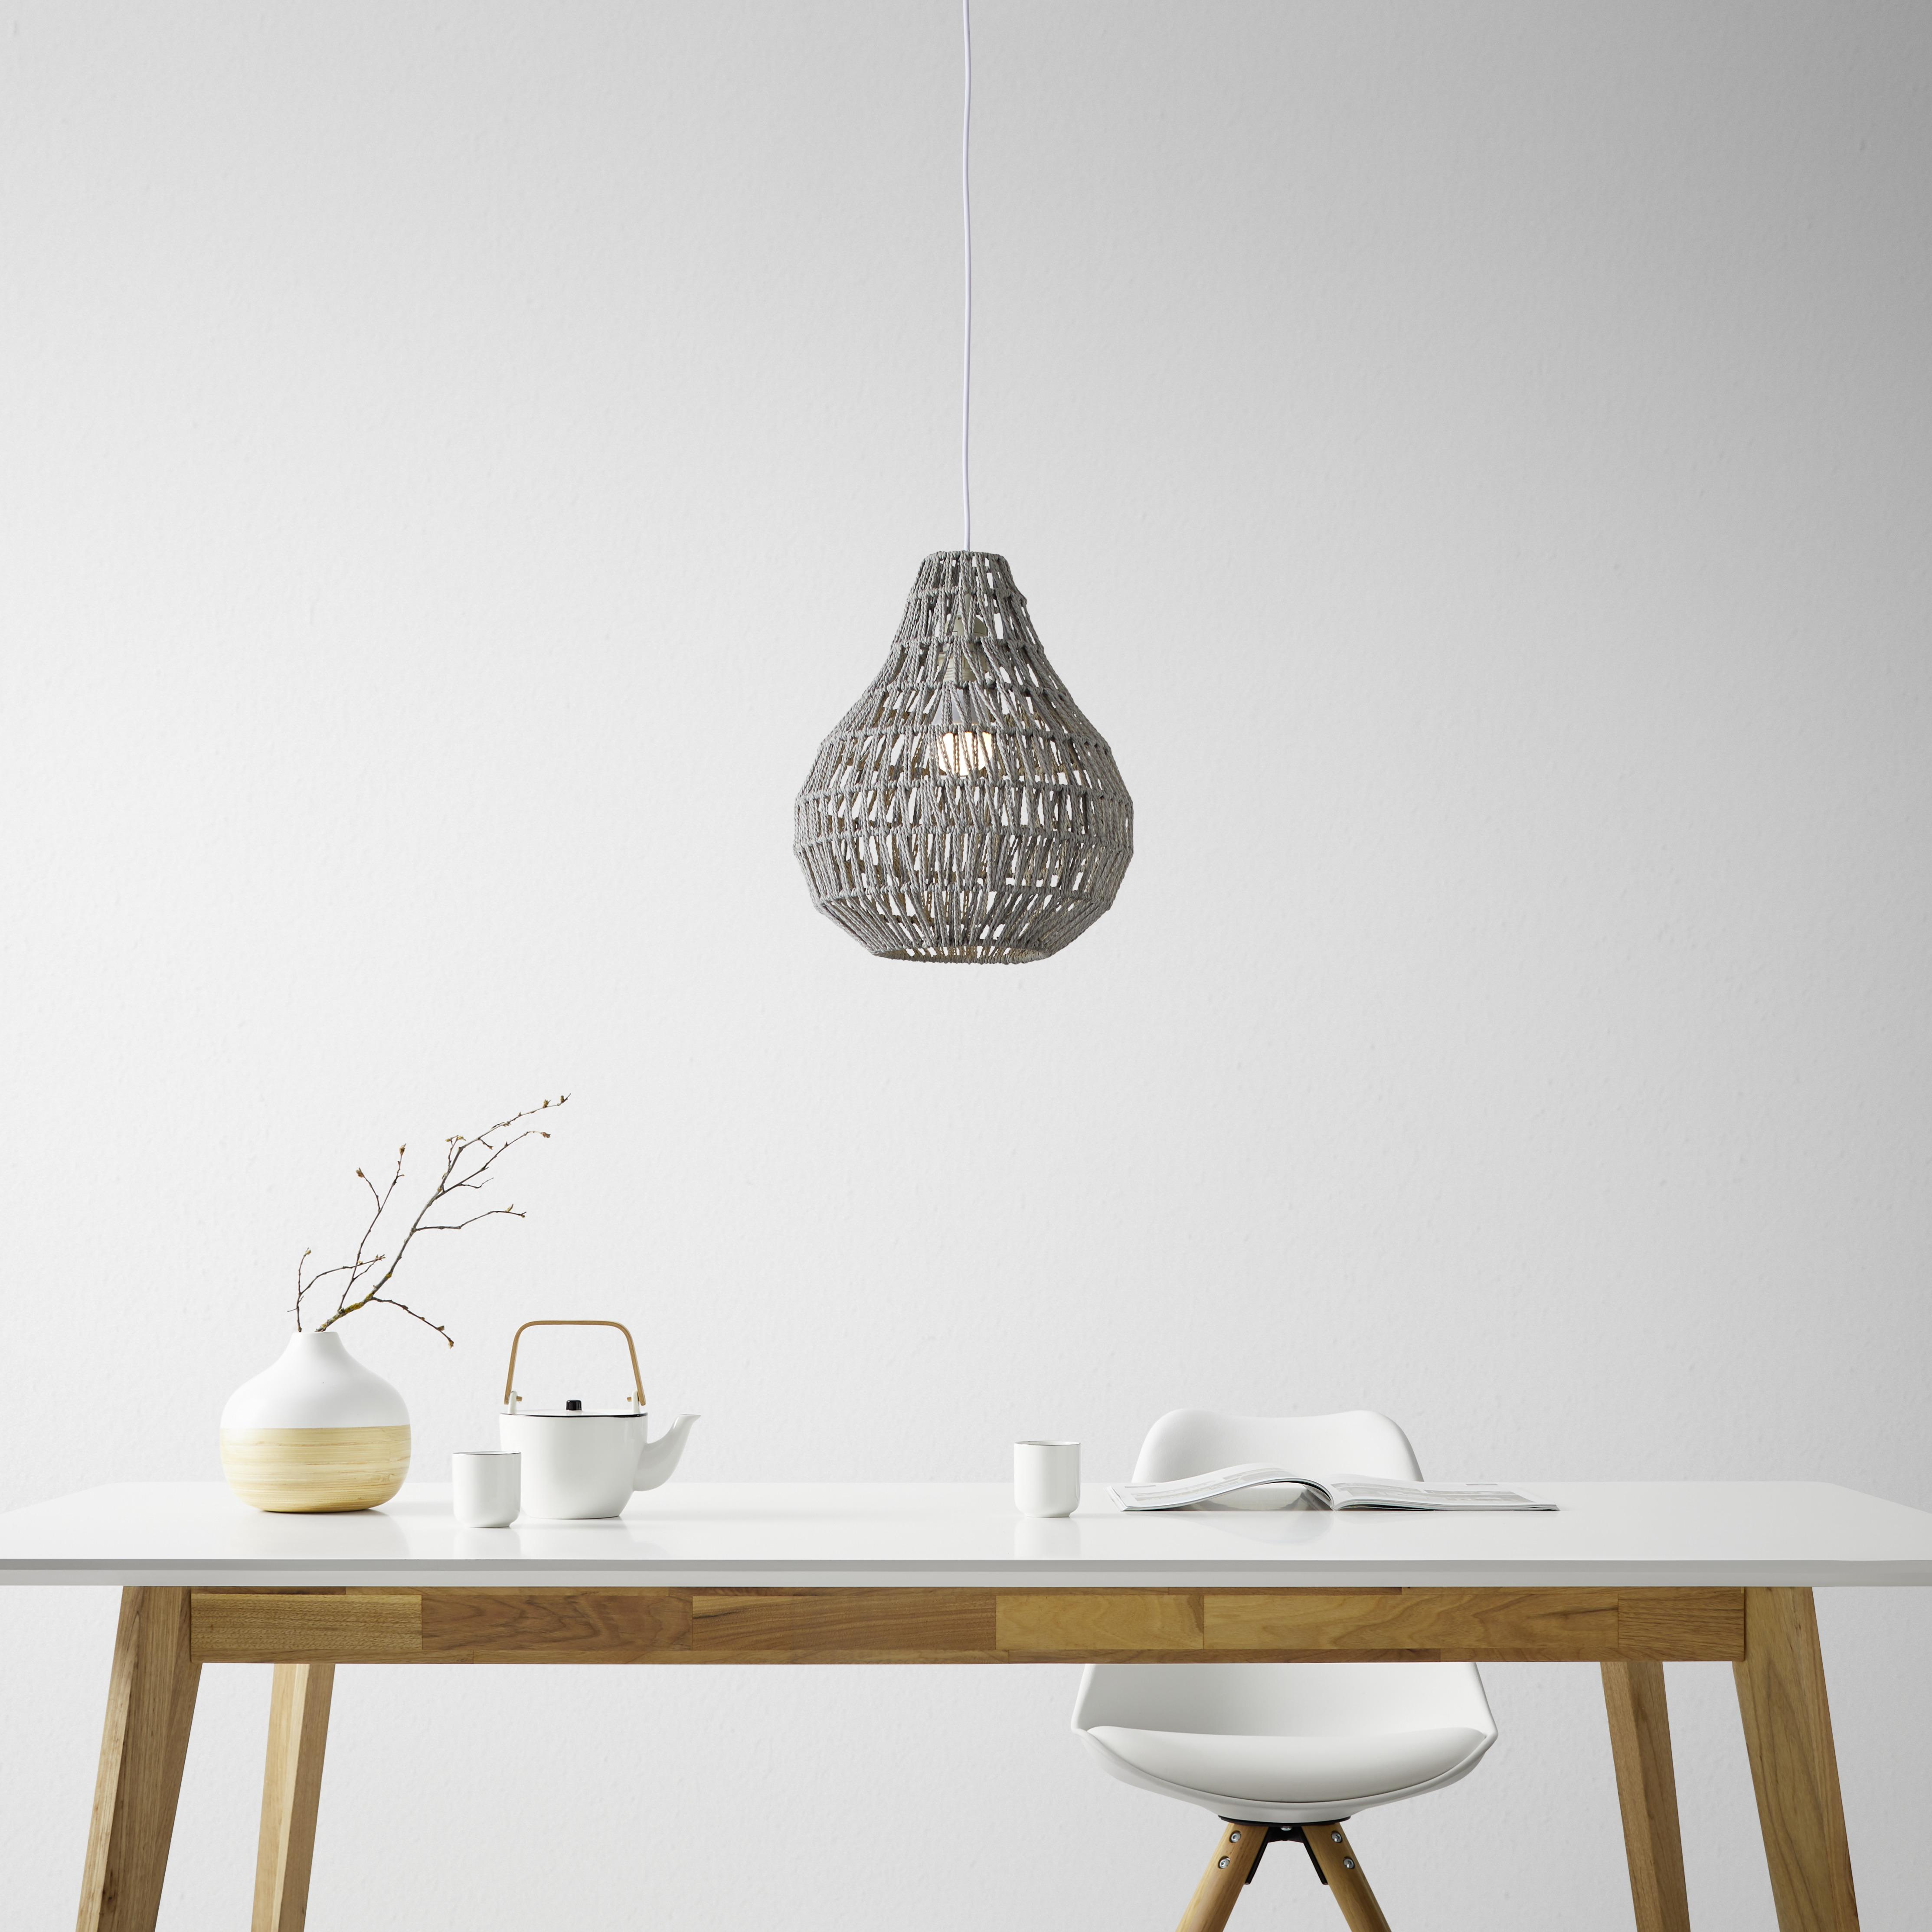 Závesná Lampa Jade 30/147cm, 60 Watt - sivá, Romantický / Vidiecky, prírodné materiály (30/147cm) - Modern Living